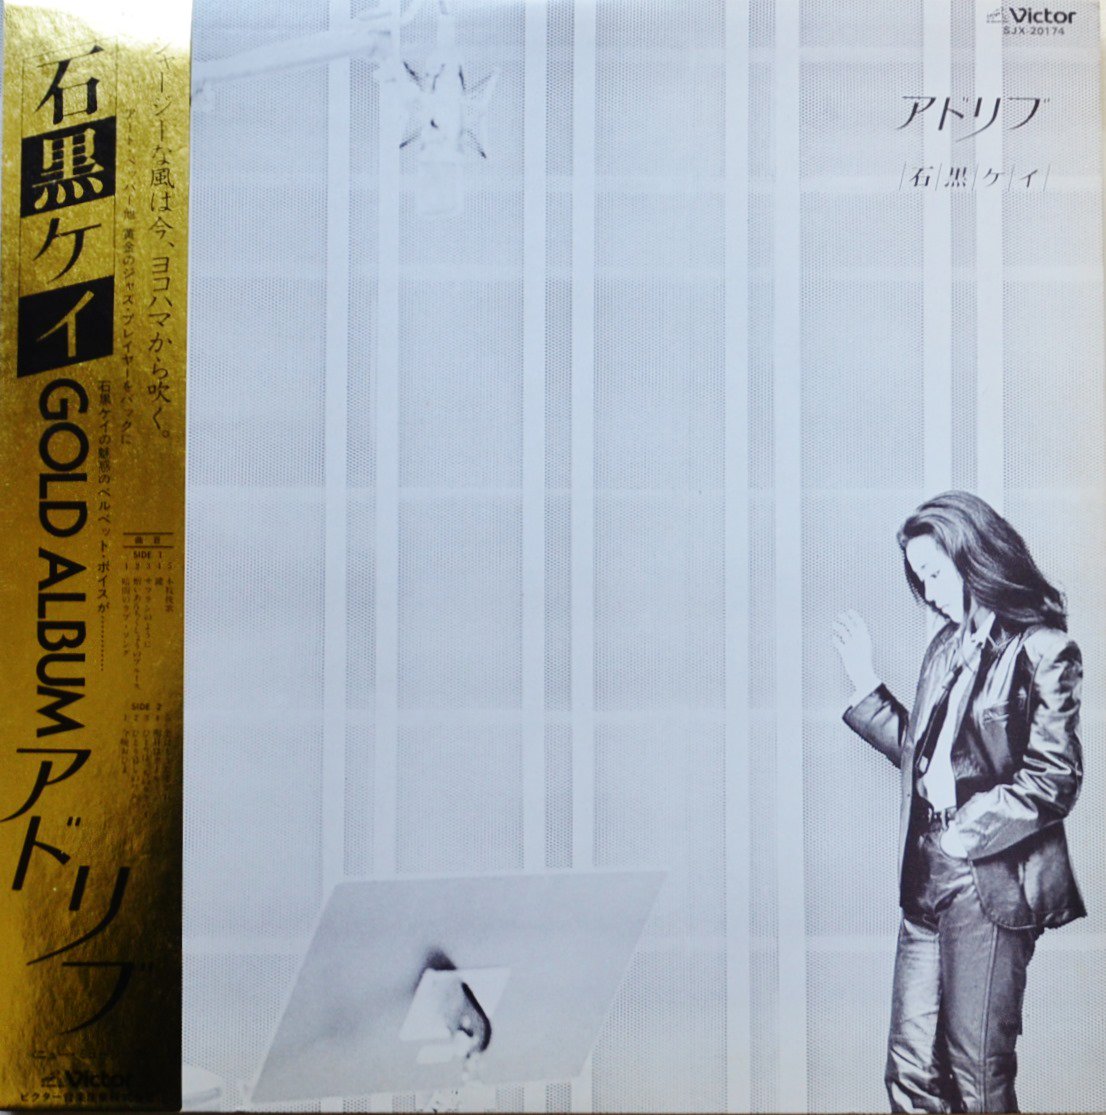 石黒ケイ / アドリブ (LP)